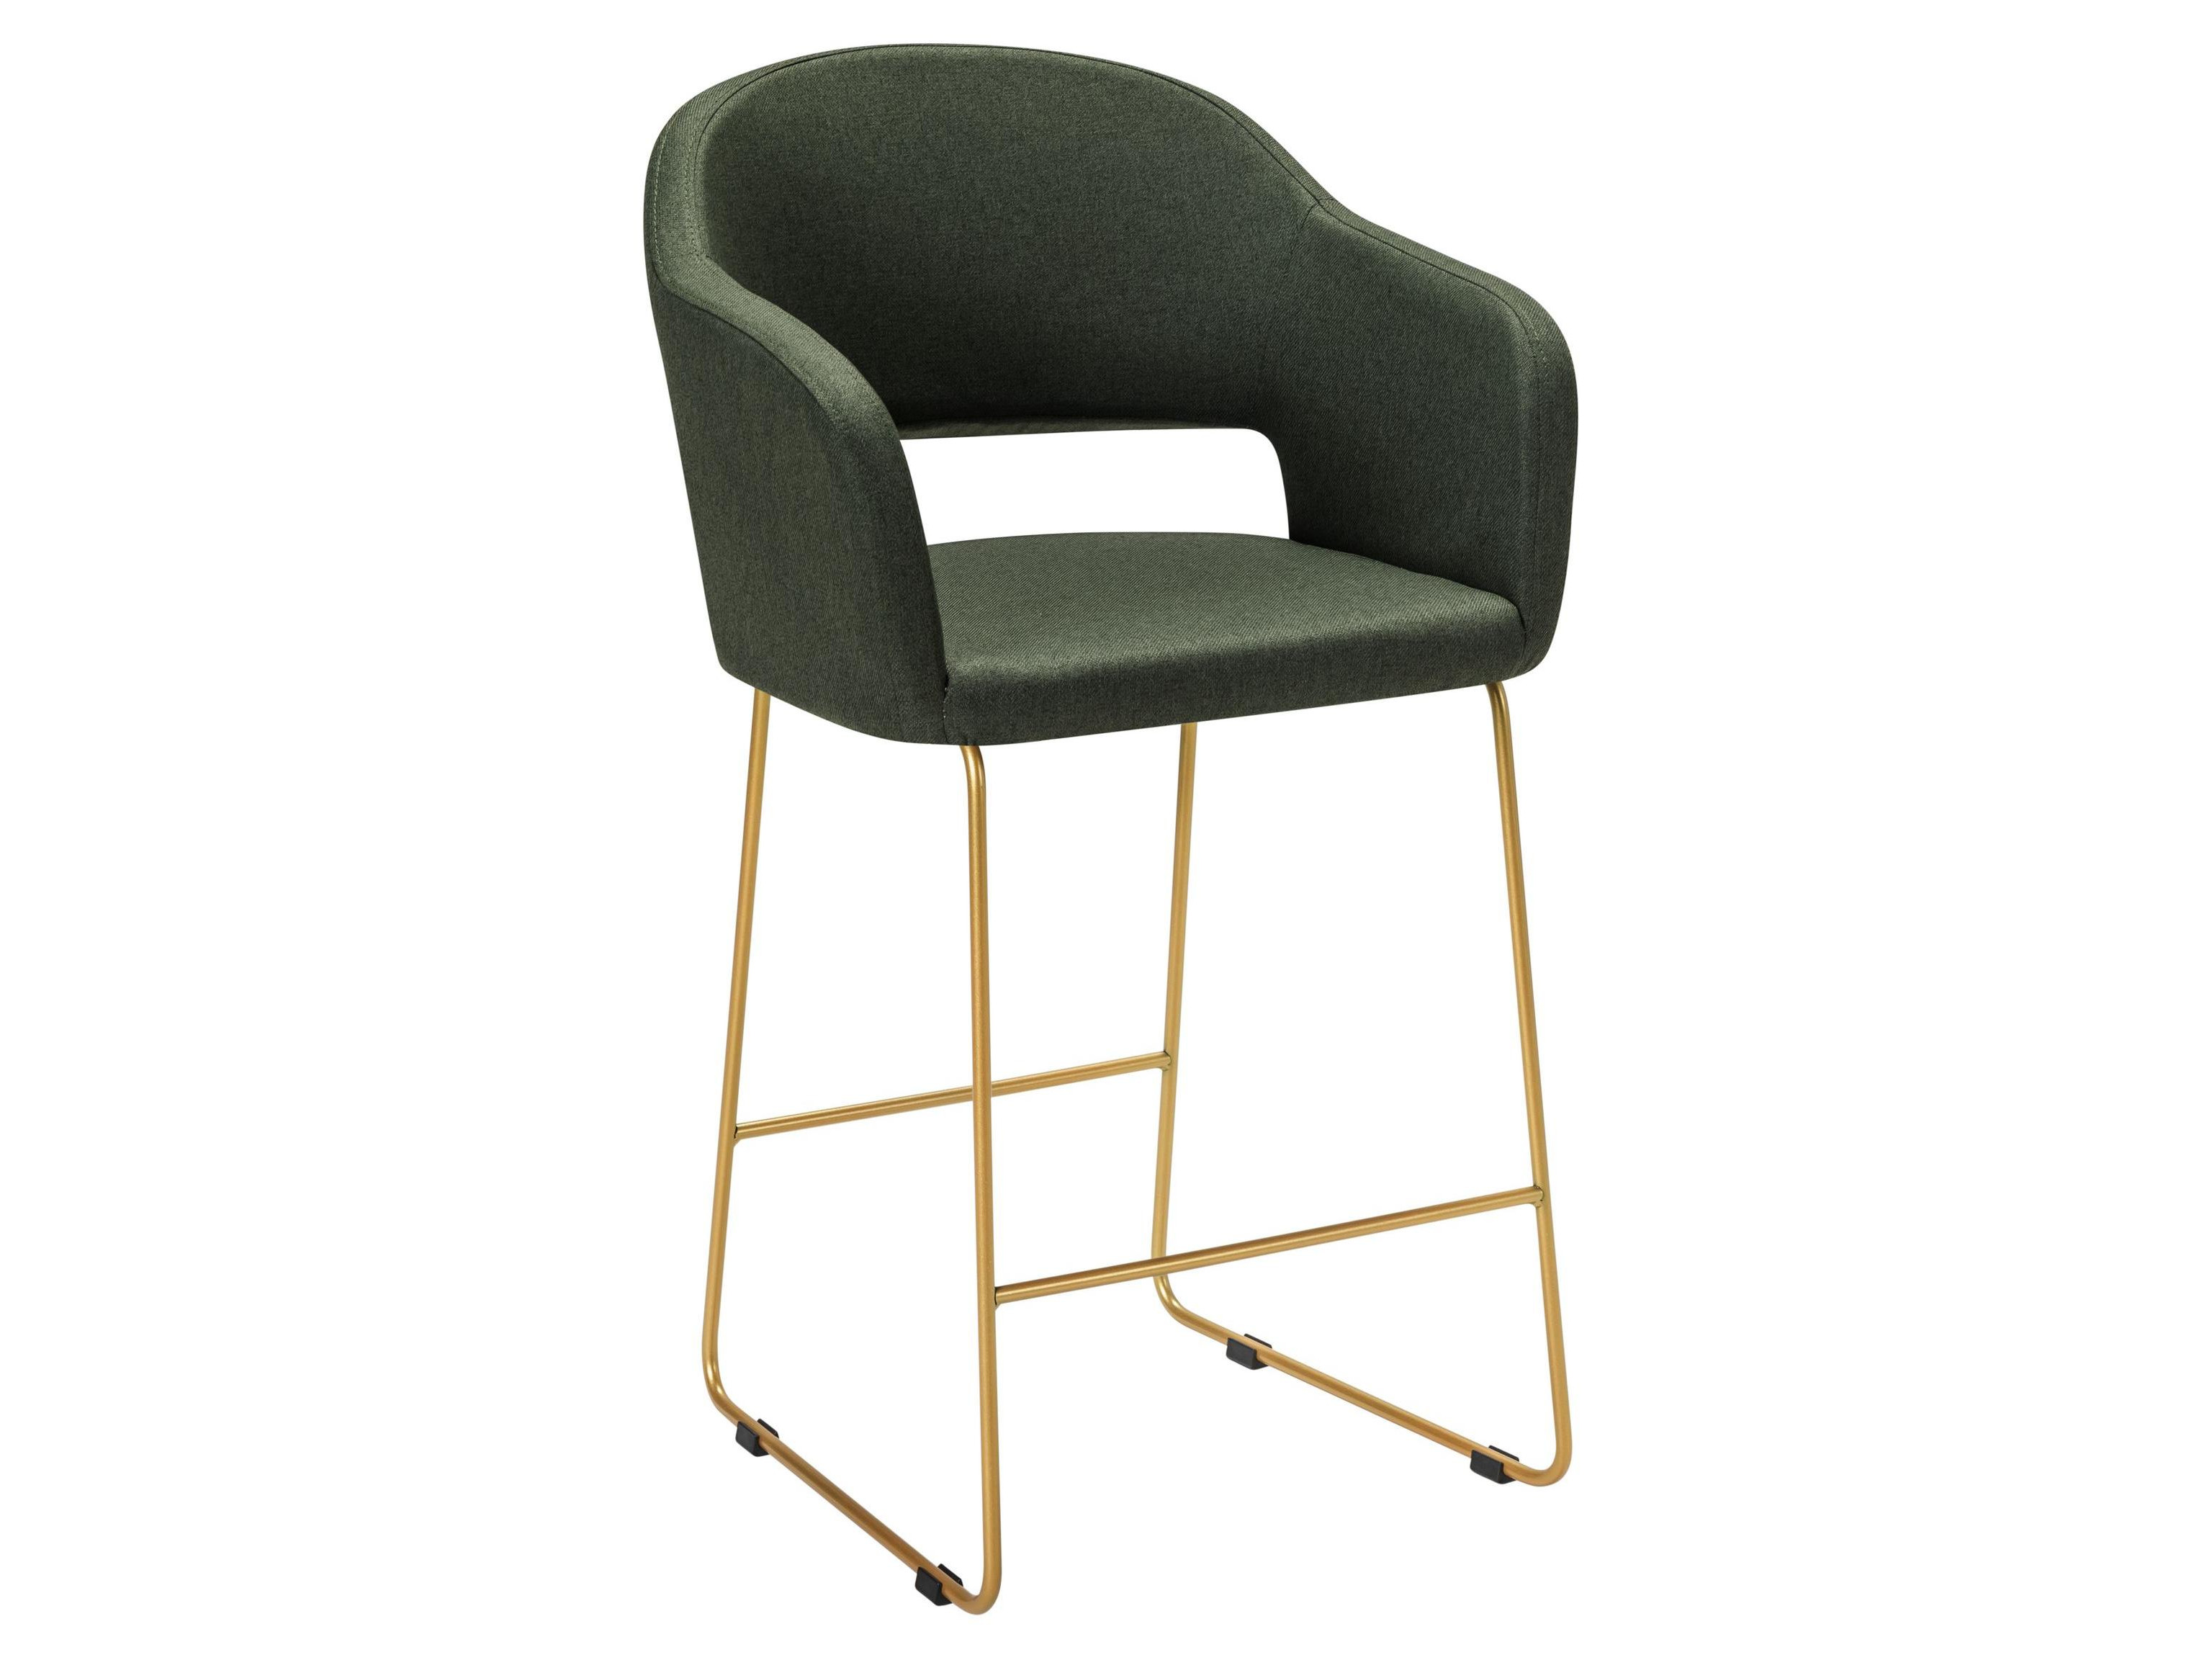 Кресло полубар Oscar тёмно-зеленый/Линк золото Зеленый, Металл кресло полубар oscar браун линкзолот бежевый металл